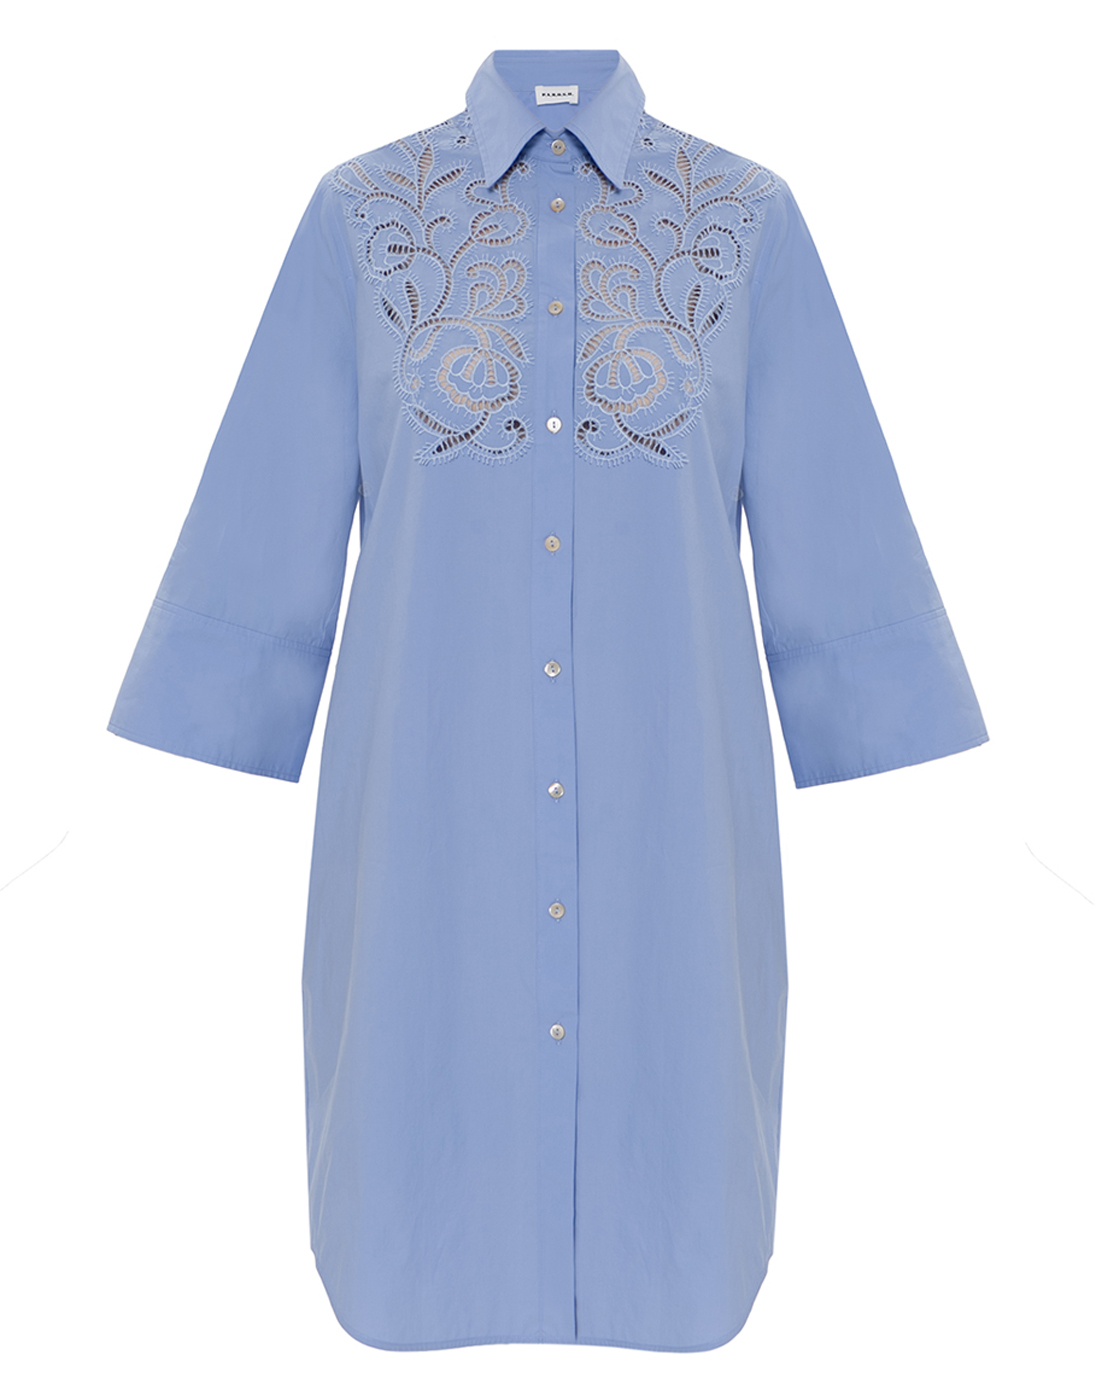 Платье голубое женское P.A.R.O.S.H. SCANYOX24/D725330/078-1